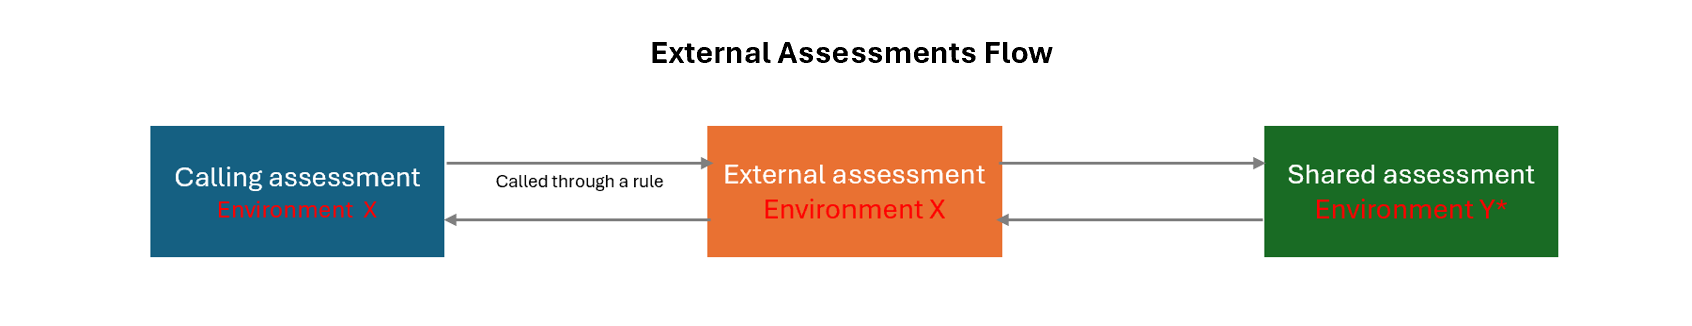 External assessment flow